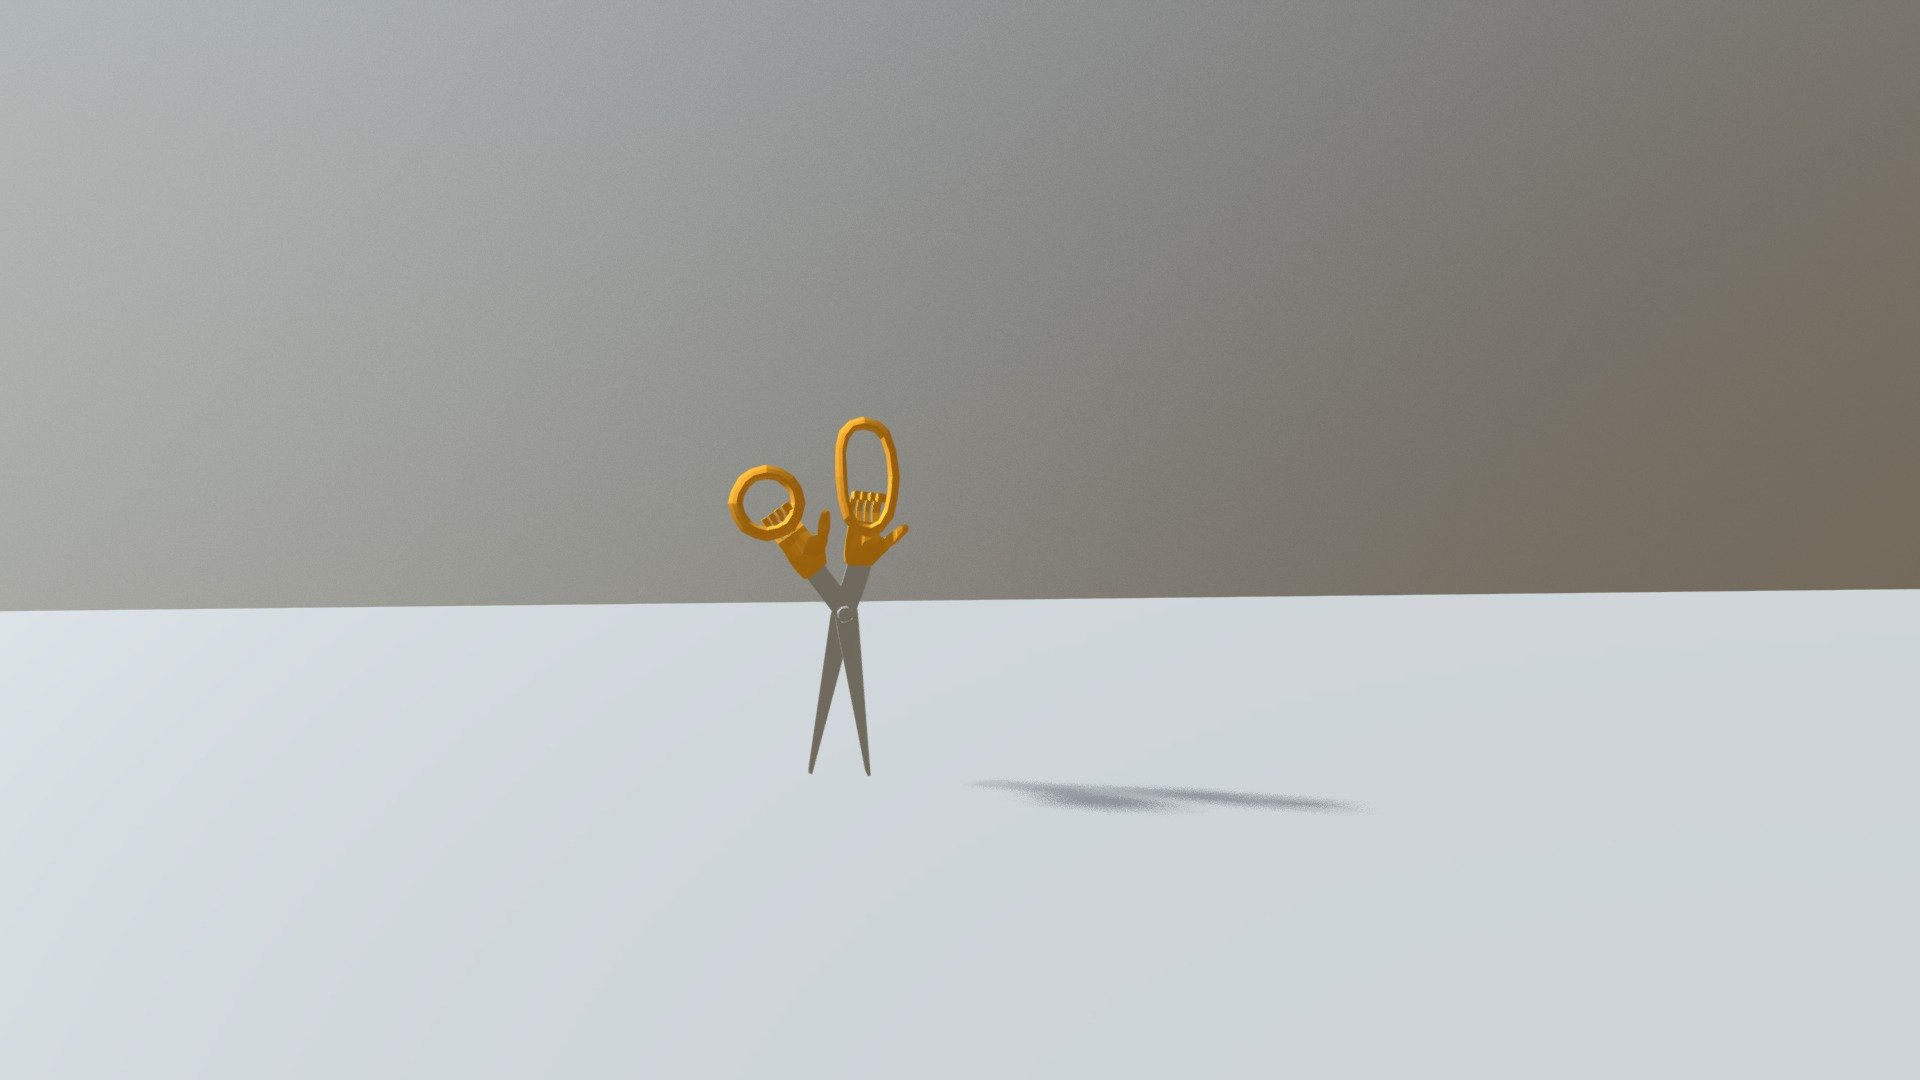 Walking Scissors Animation Loop